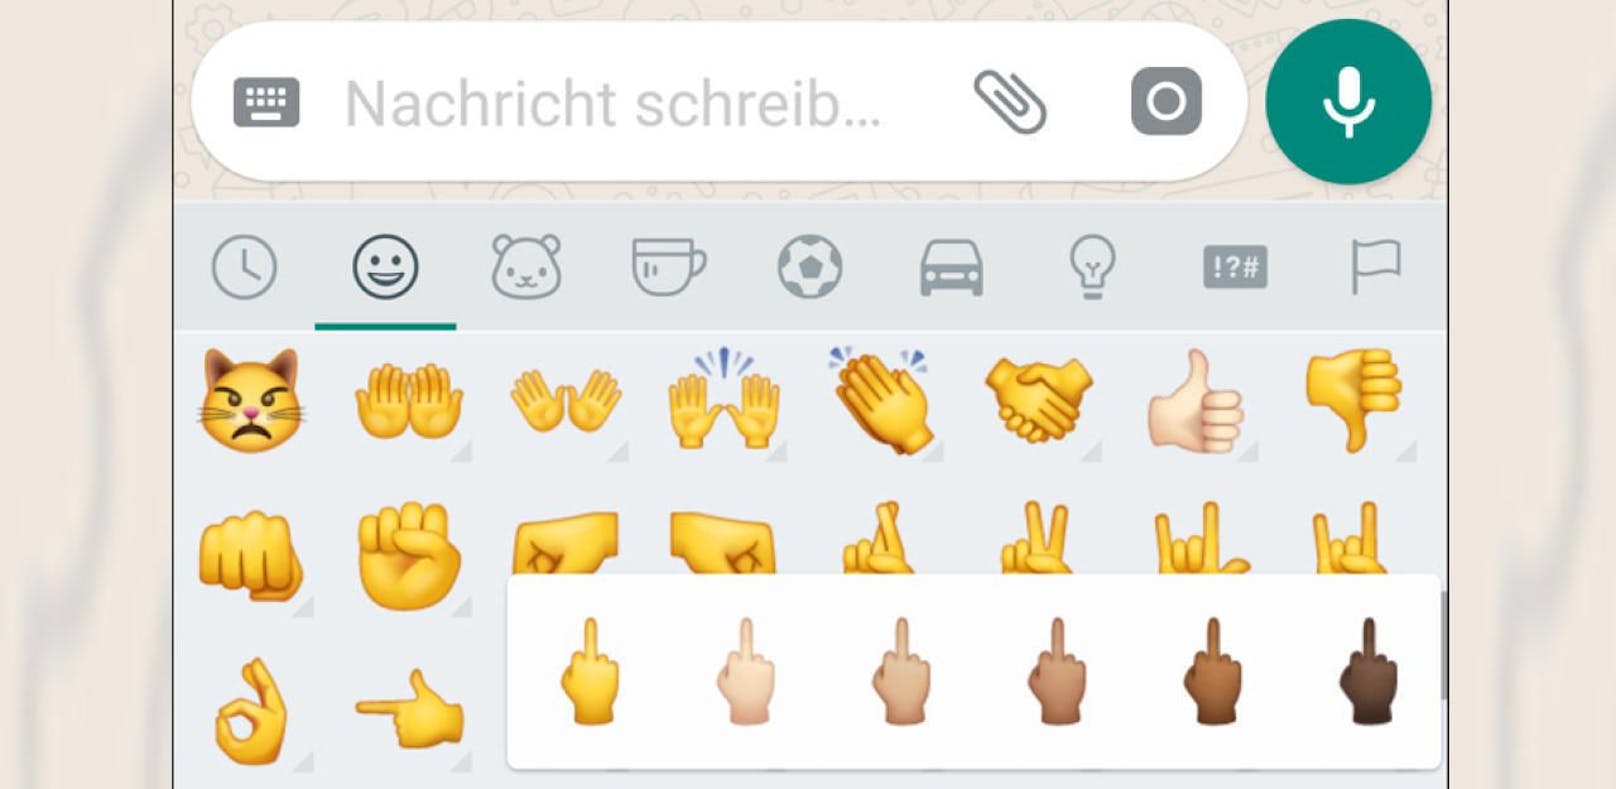 Das Mittelfinger-Emojis soll verboten werden.